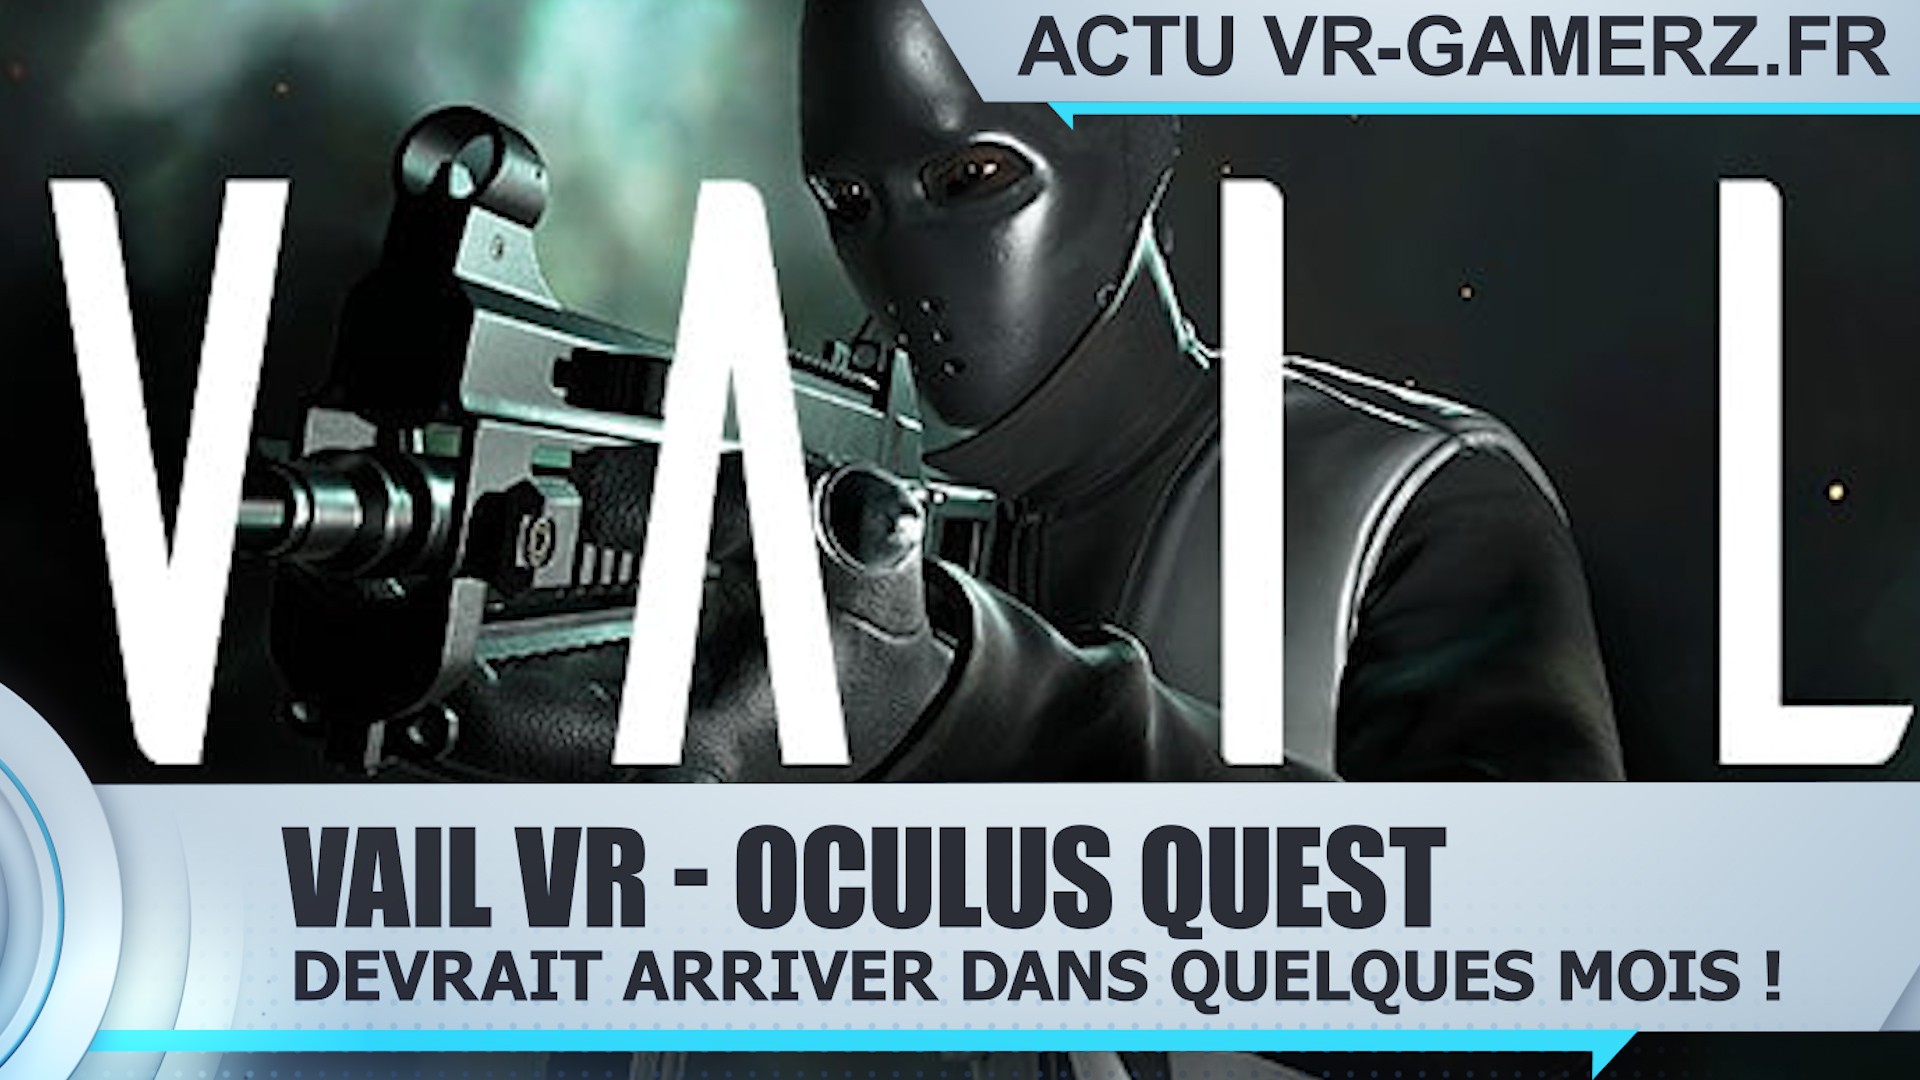 Vail VR devrait arriver sur Oculus quest dans quelques mois !